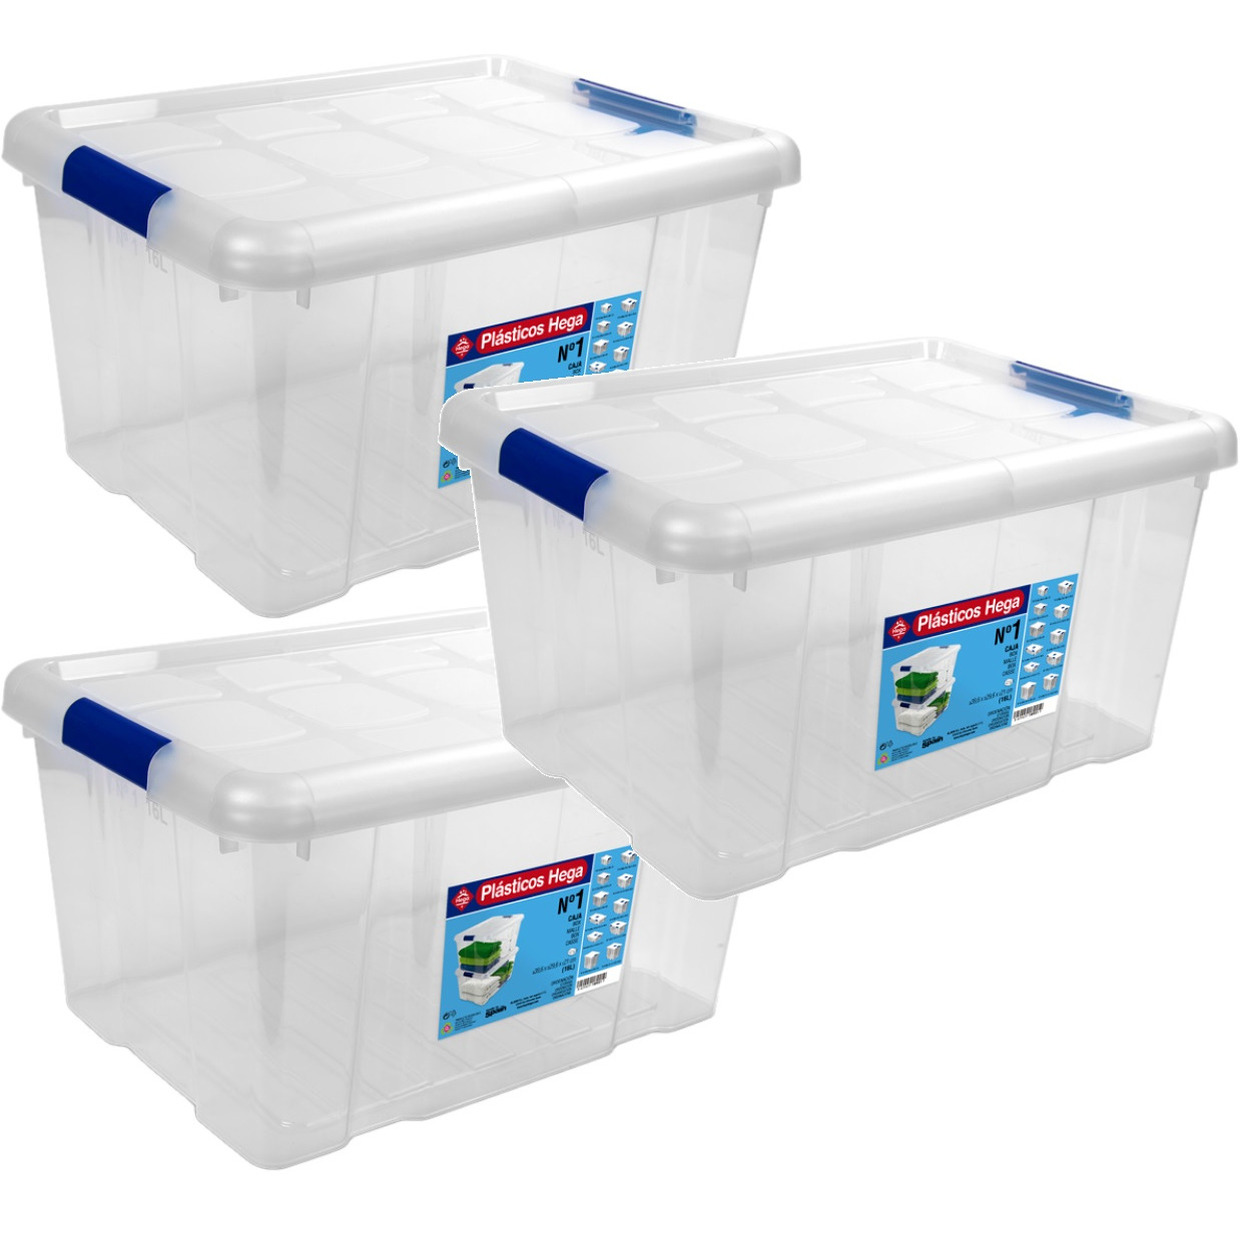 5x Opbergboxen-opbergdozen met deksel 16 liter kunststof transparant-blauw